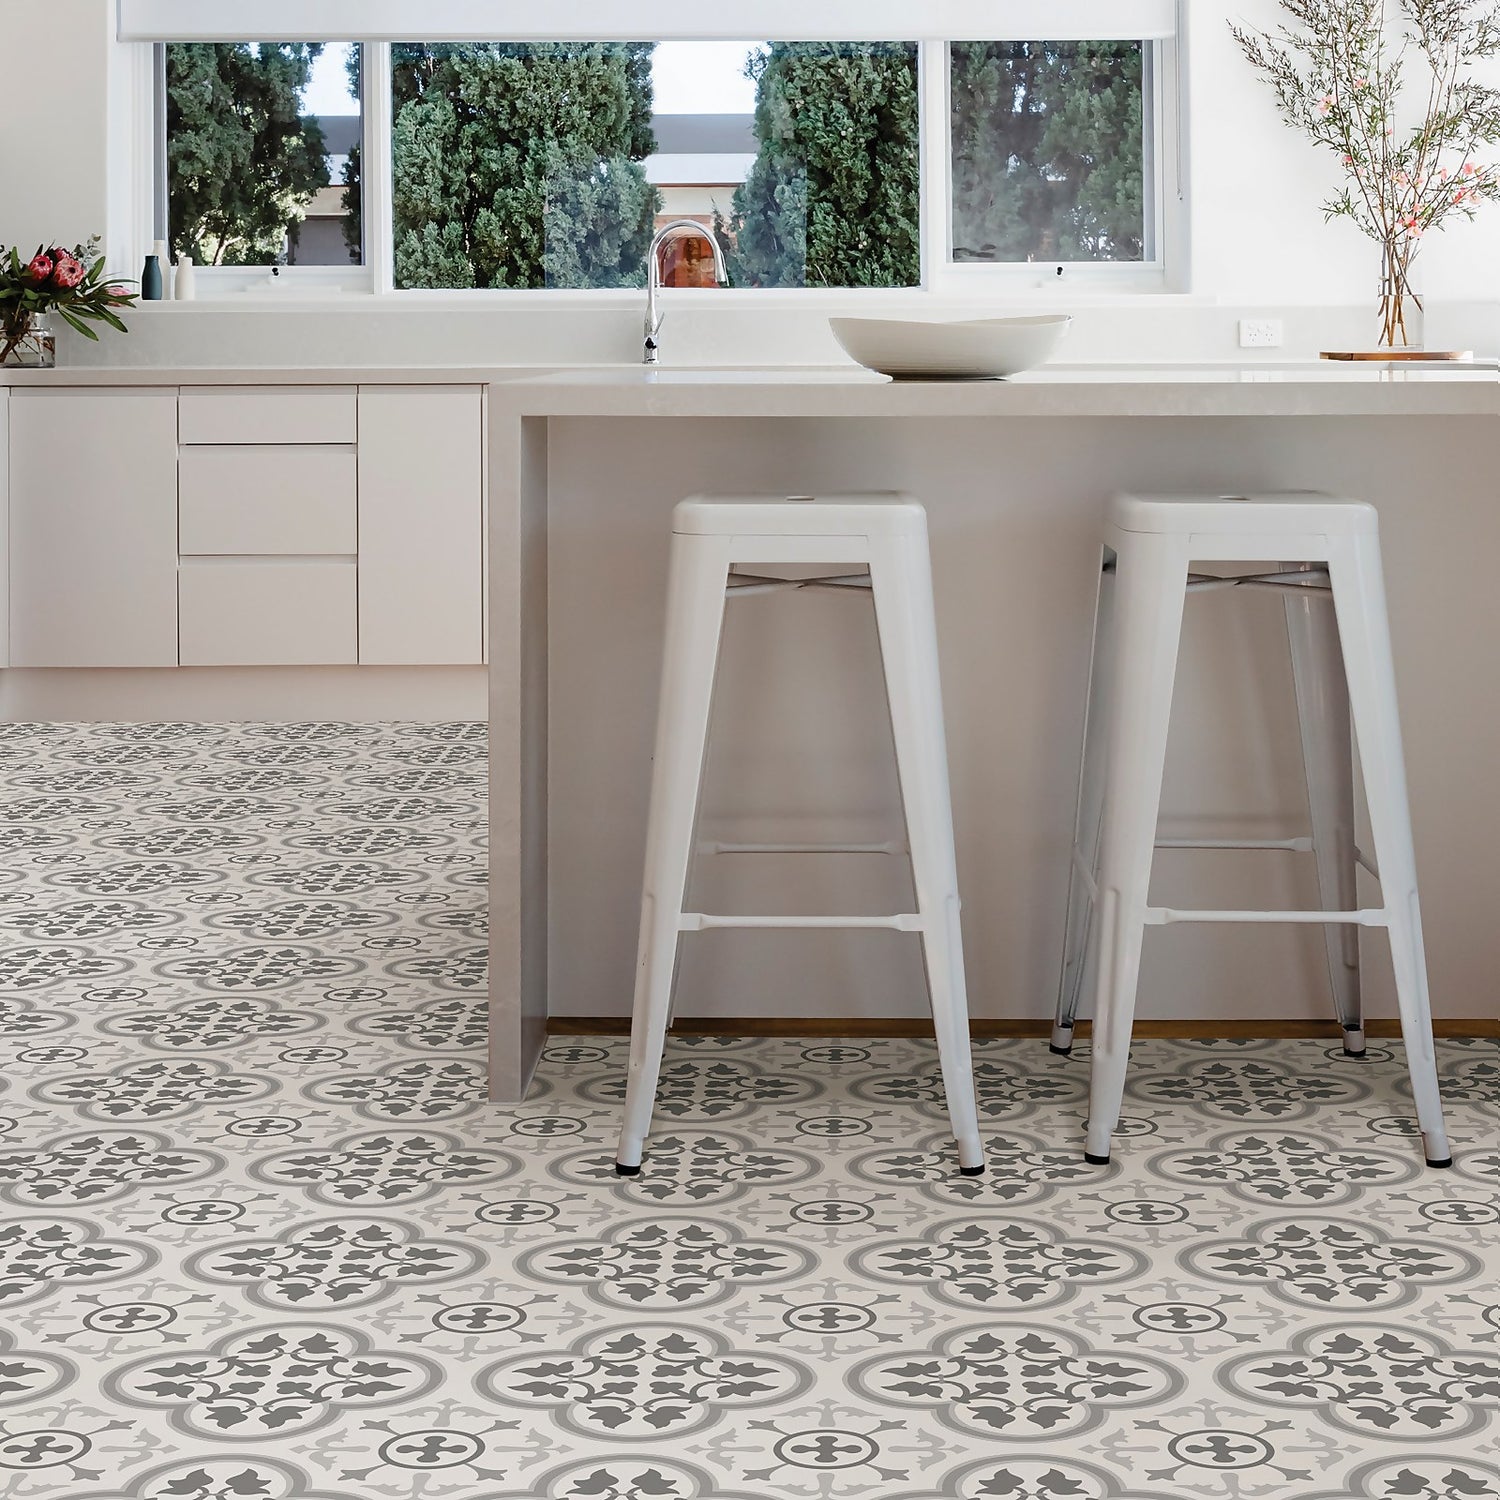 Floorpops L And Stick Floor Tiles, Grey Vinyl Floor Tiles Homebase